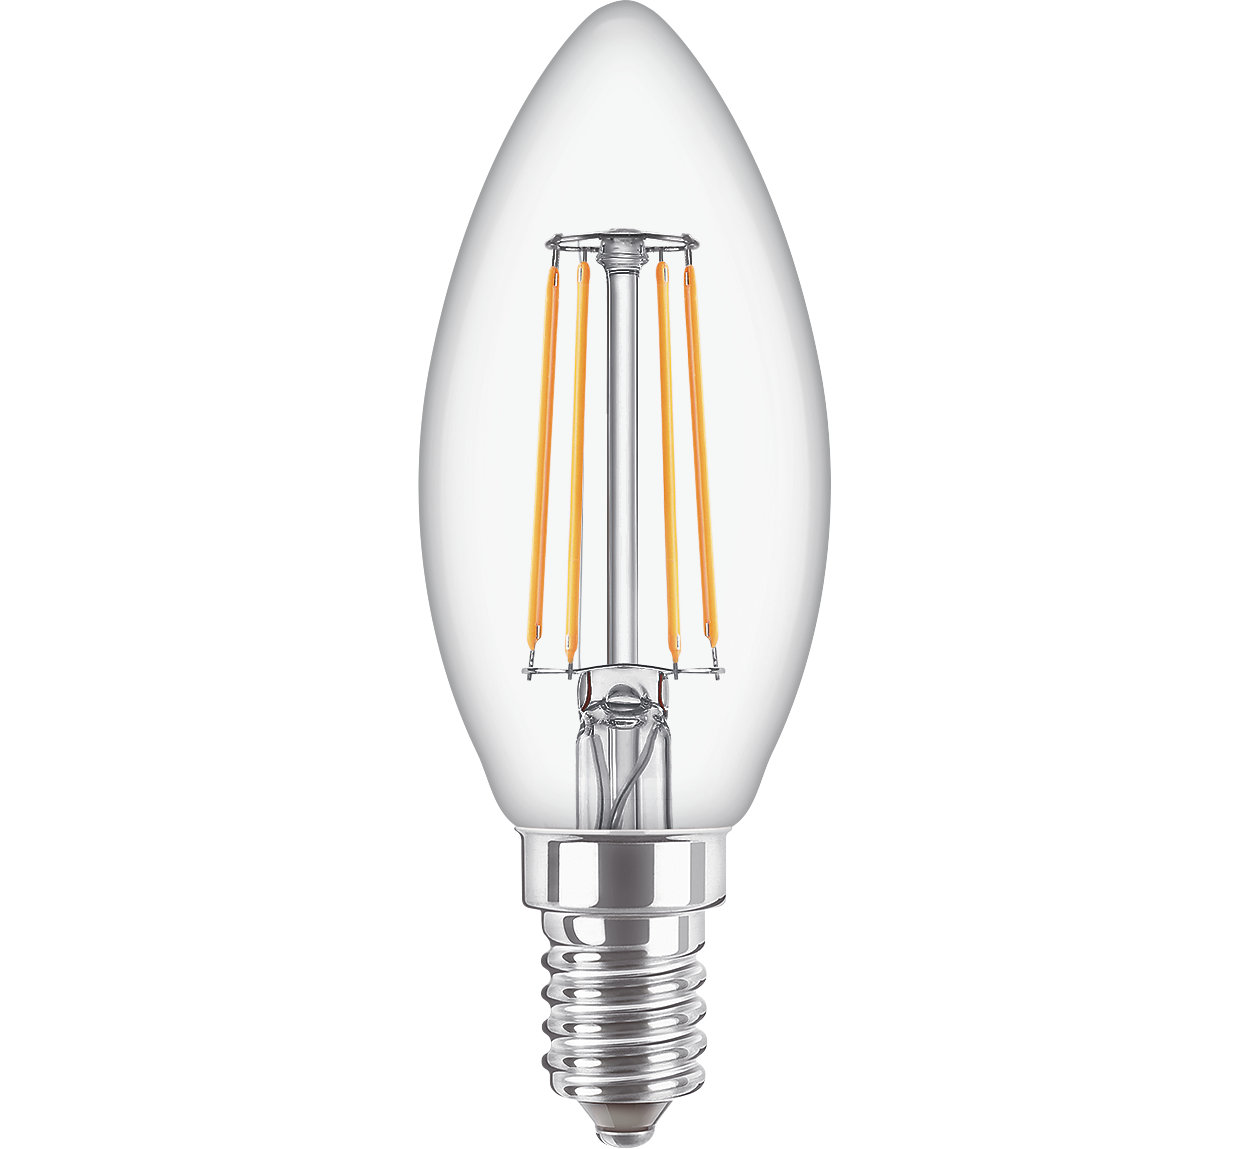 Para los trabajos de iluminación cotidianos, las velas LED cuentan con un diseño clásico tradicional con las ventajas de la tecnología LED de larga duración